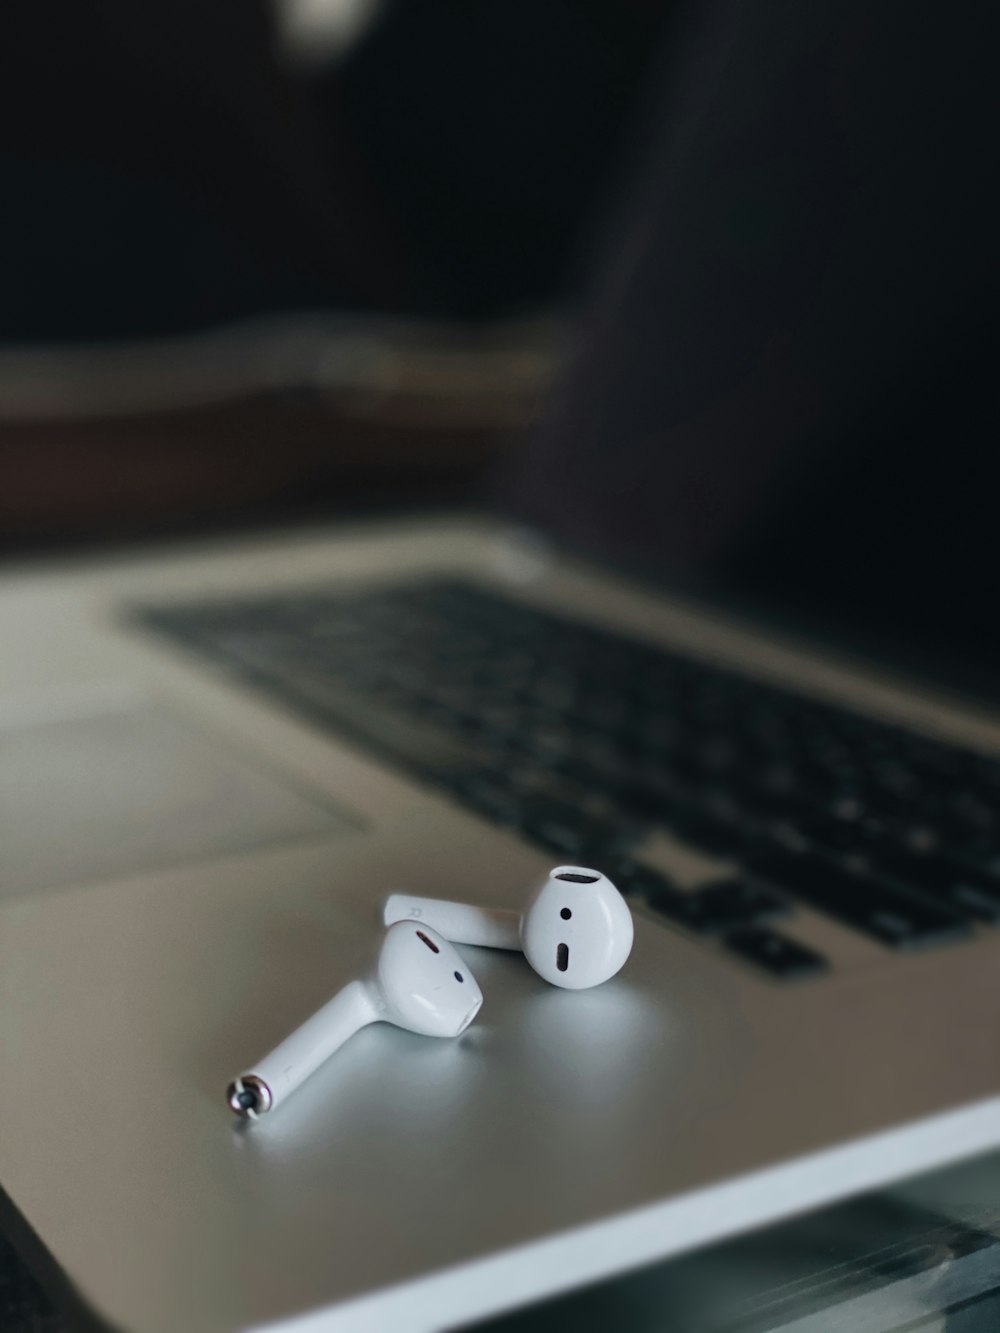 fones de ouvido brancos no macbook pro